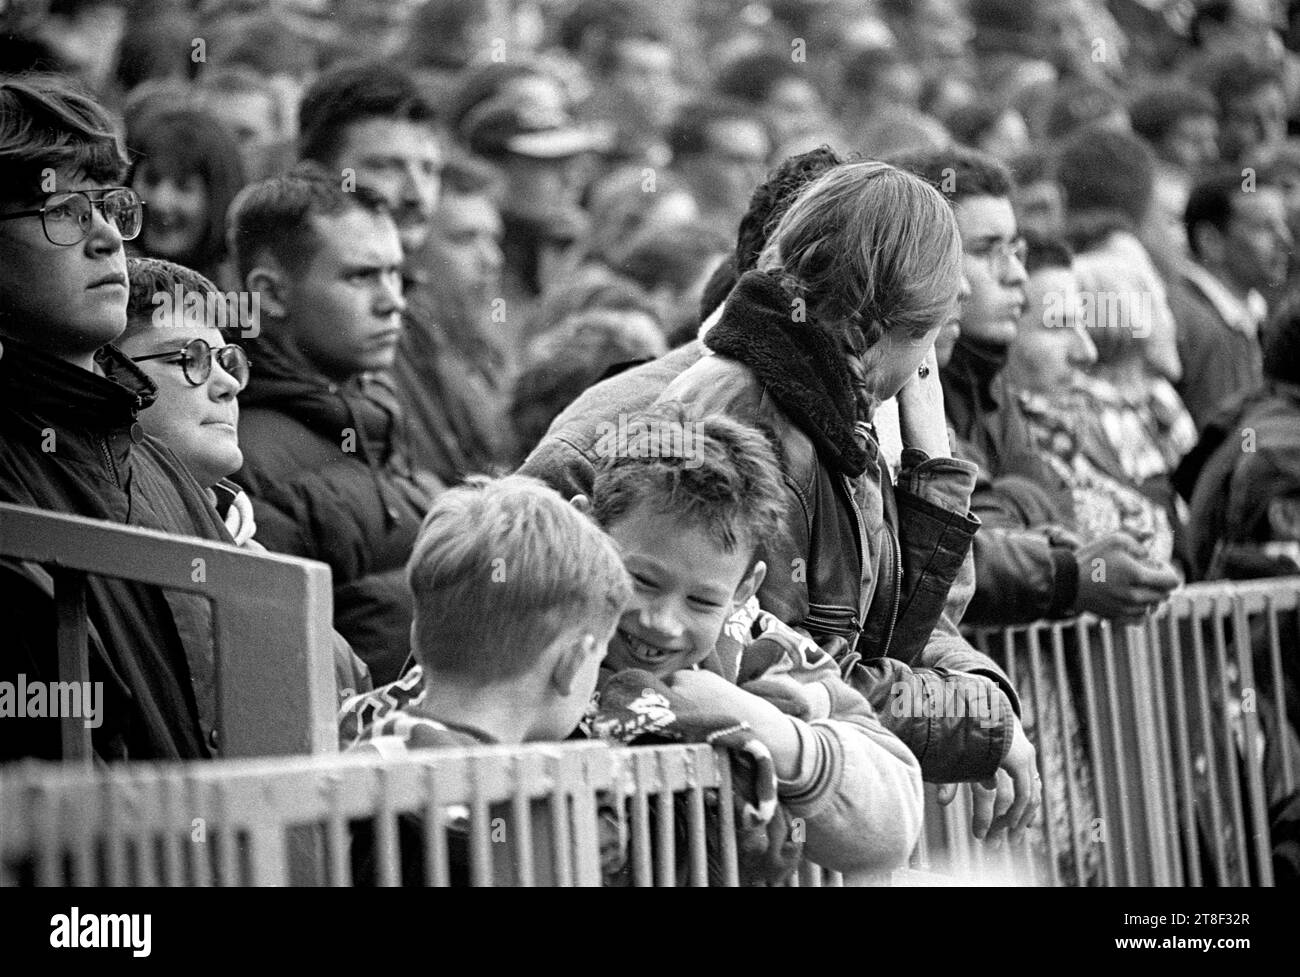 Fans gallois dans les tribunes lors du dernier match des cinq nations à domicile à l'ancien Arms Park à Cardiff contre la France le 16 1996 mars. Le pays de Galles a remporté le match 16-15 victoire. C'était une bonne façon de dire adieu au sol. Après ce match, l'ancien stade a été radicalement agrandi et réaménagé avec un toit pour accueillir la finale de la coupe du monde de rugby en 1999. Photo : ROB WATKINS Banque D'Images